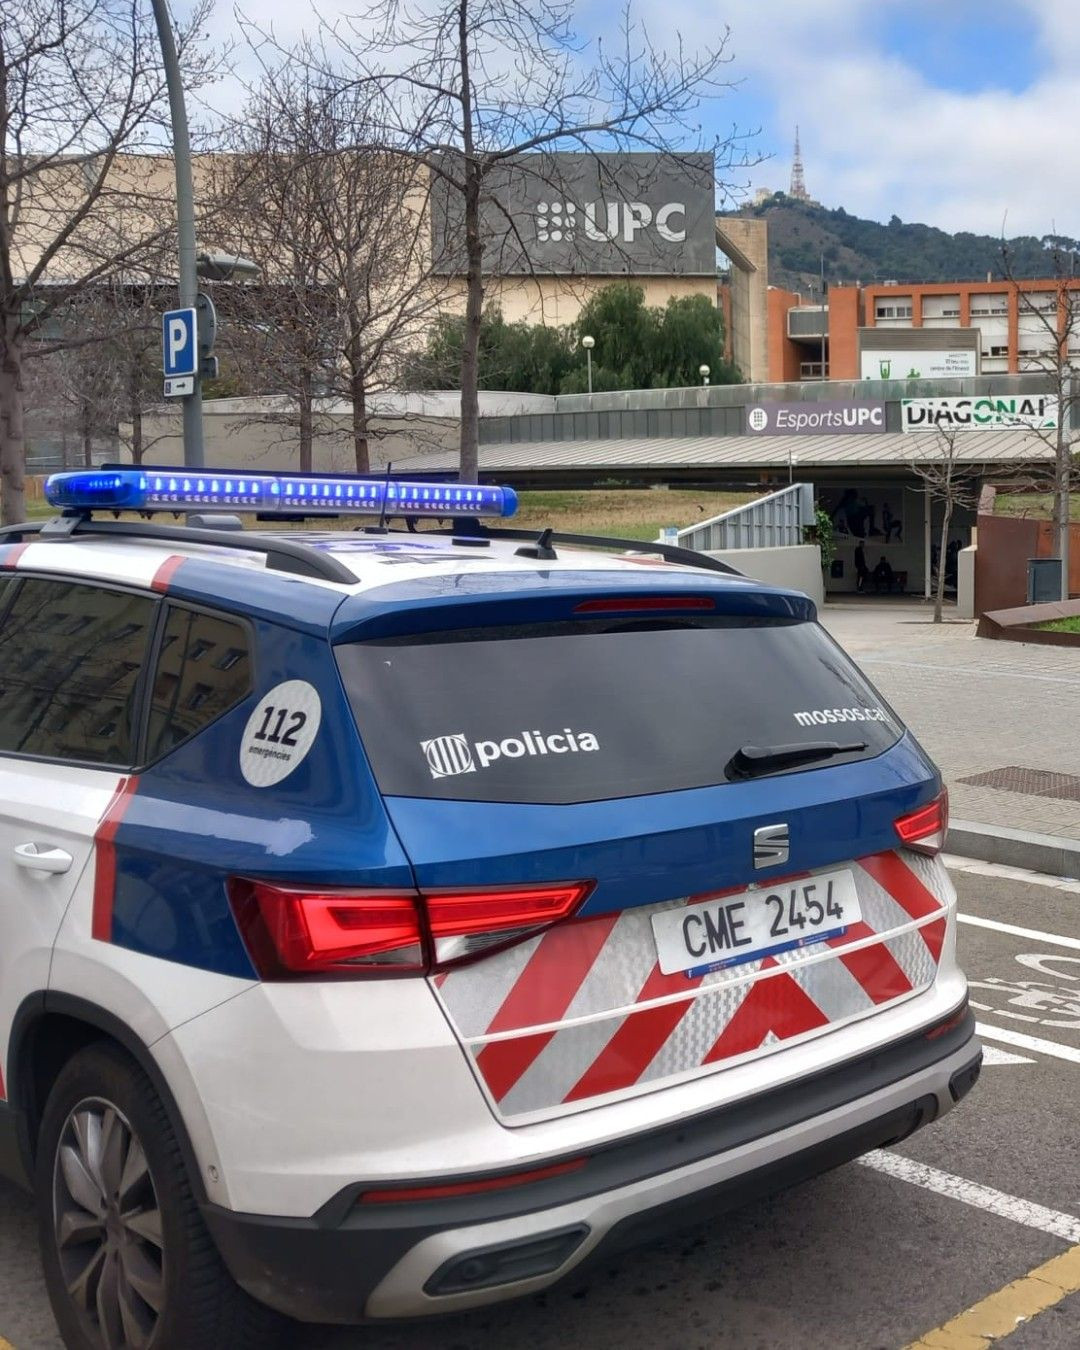 Una patrulla de los Mossos d'Esquadra en la Zona Universitària de Barcelona / MOSSOS